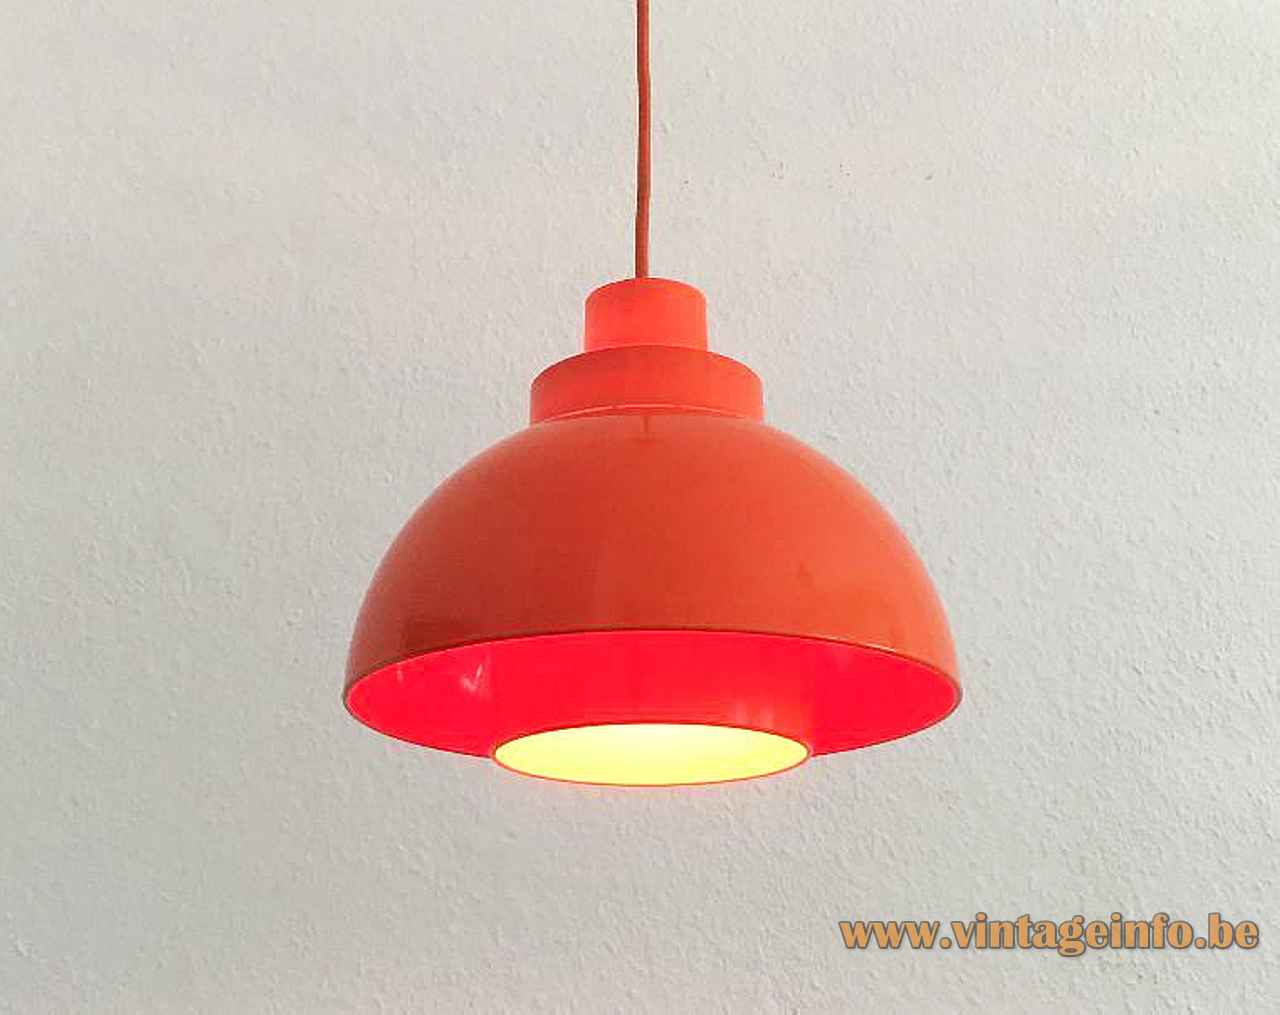 Nordisk Solar Minisol pendant lamp orange plastic mushroom lampshade 1960s design: K. Kewo Denmark E27 socket